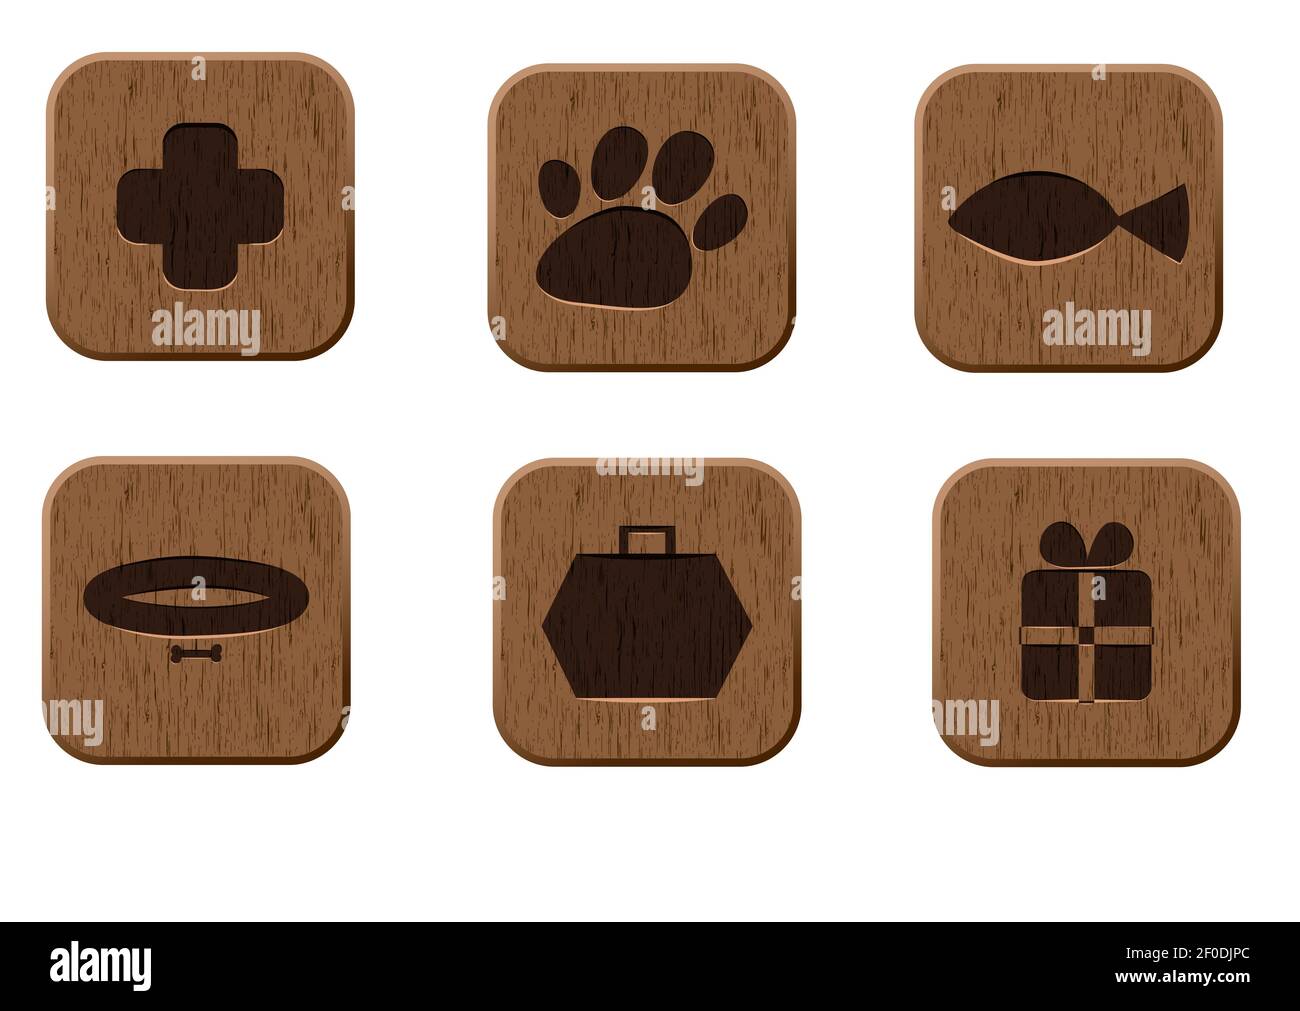 Pet shop wooden icons set Stock Photo